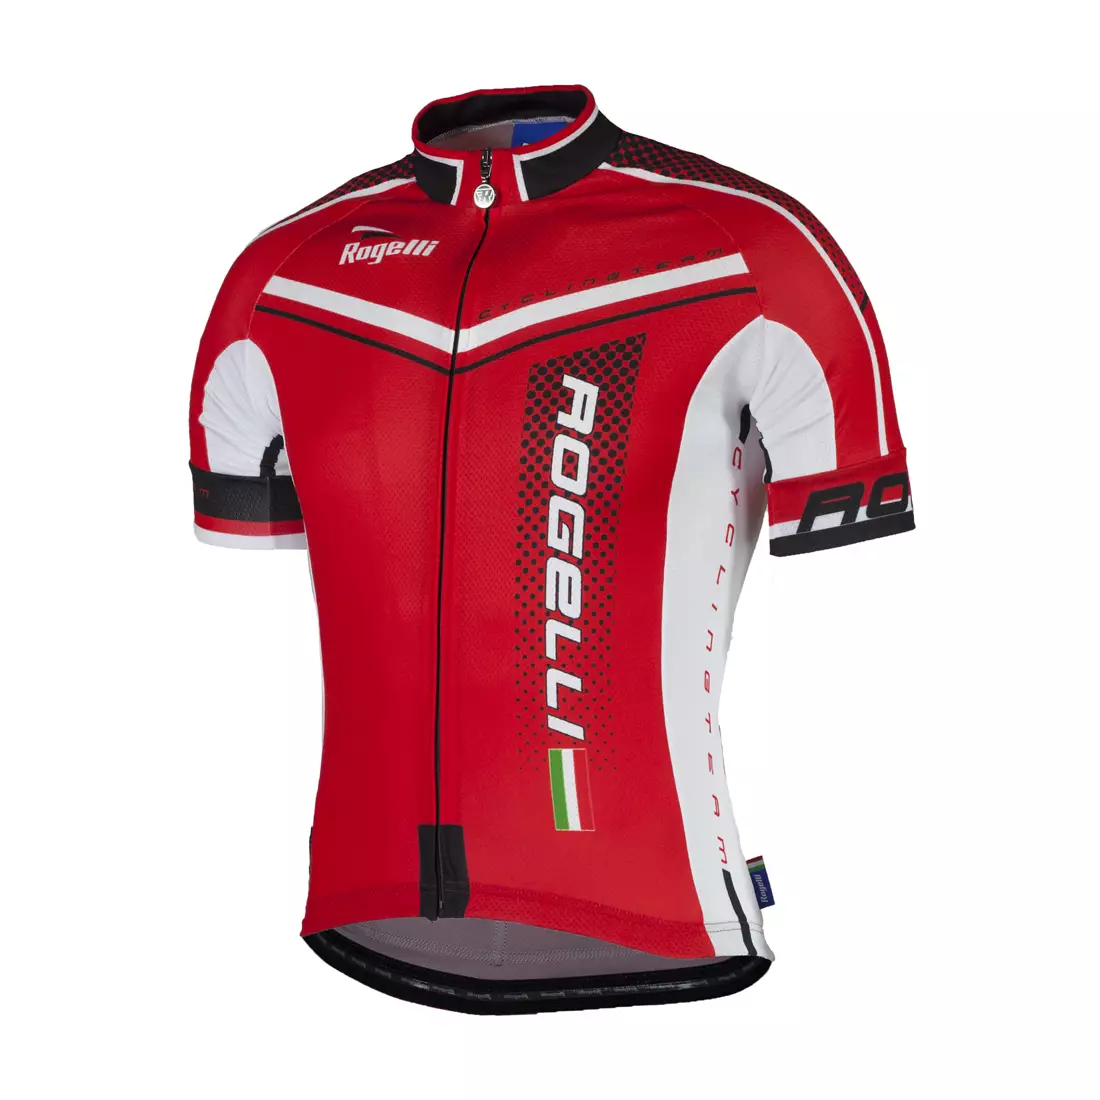 ROGELLI GARA MOSTRO - tricou de ciclism pentru bărbați 001.243, roșu